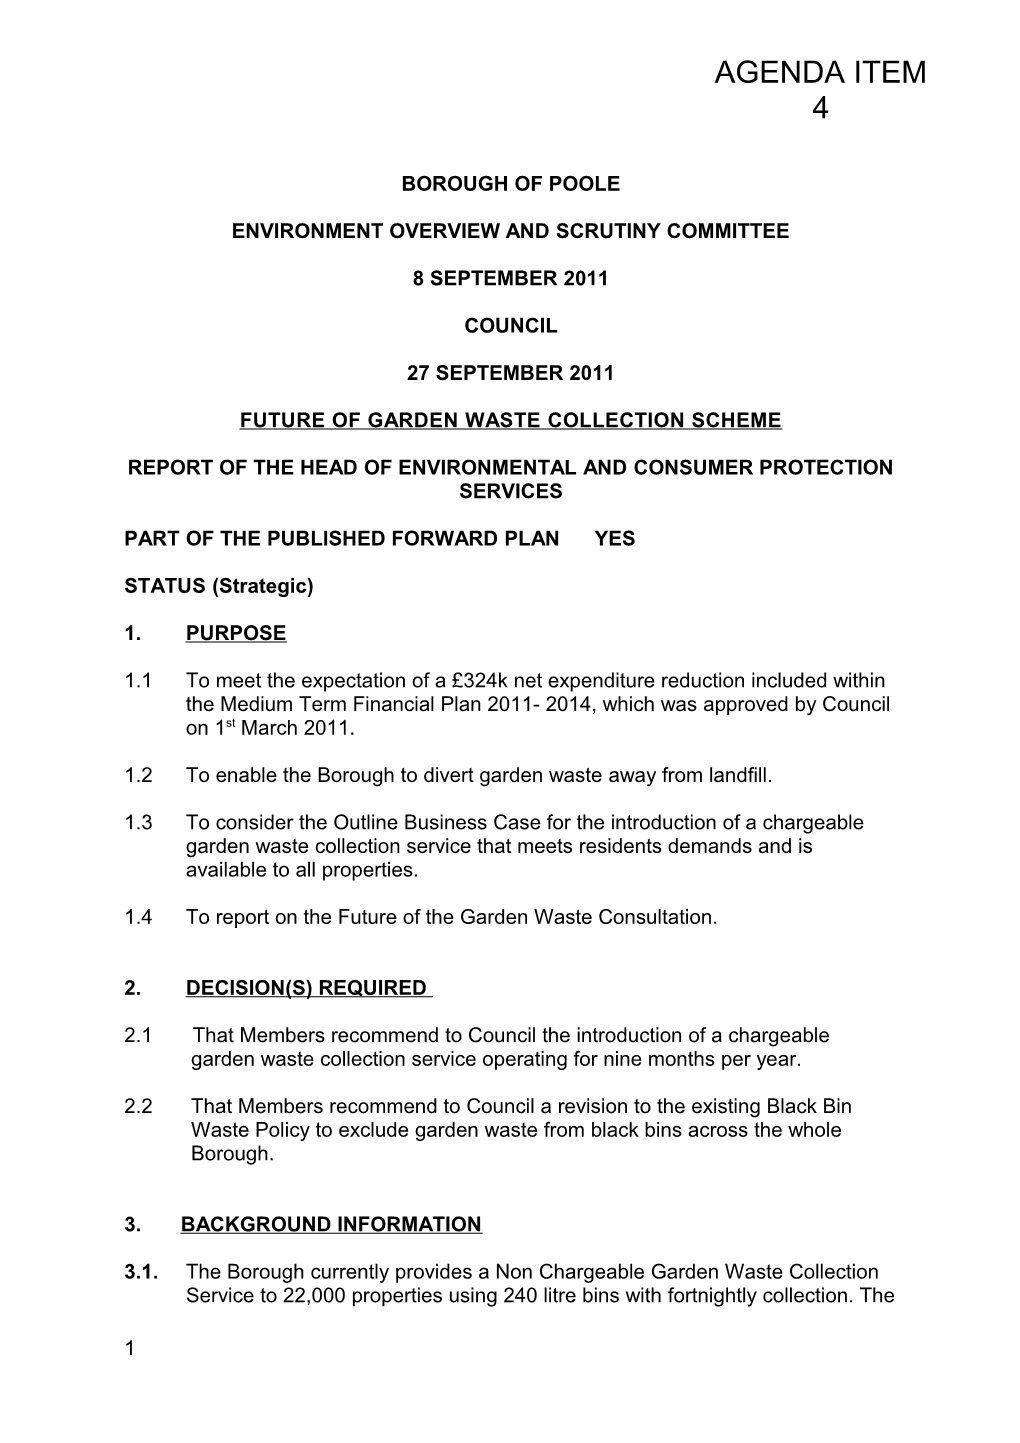 Future of Garden Waste Collection Scheme